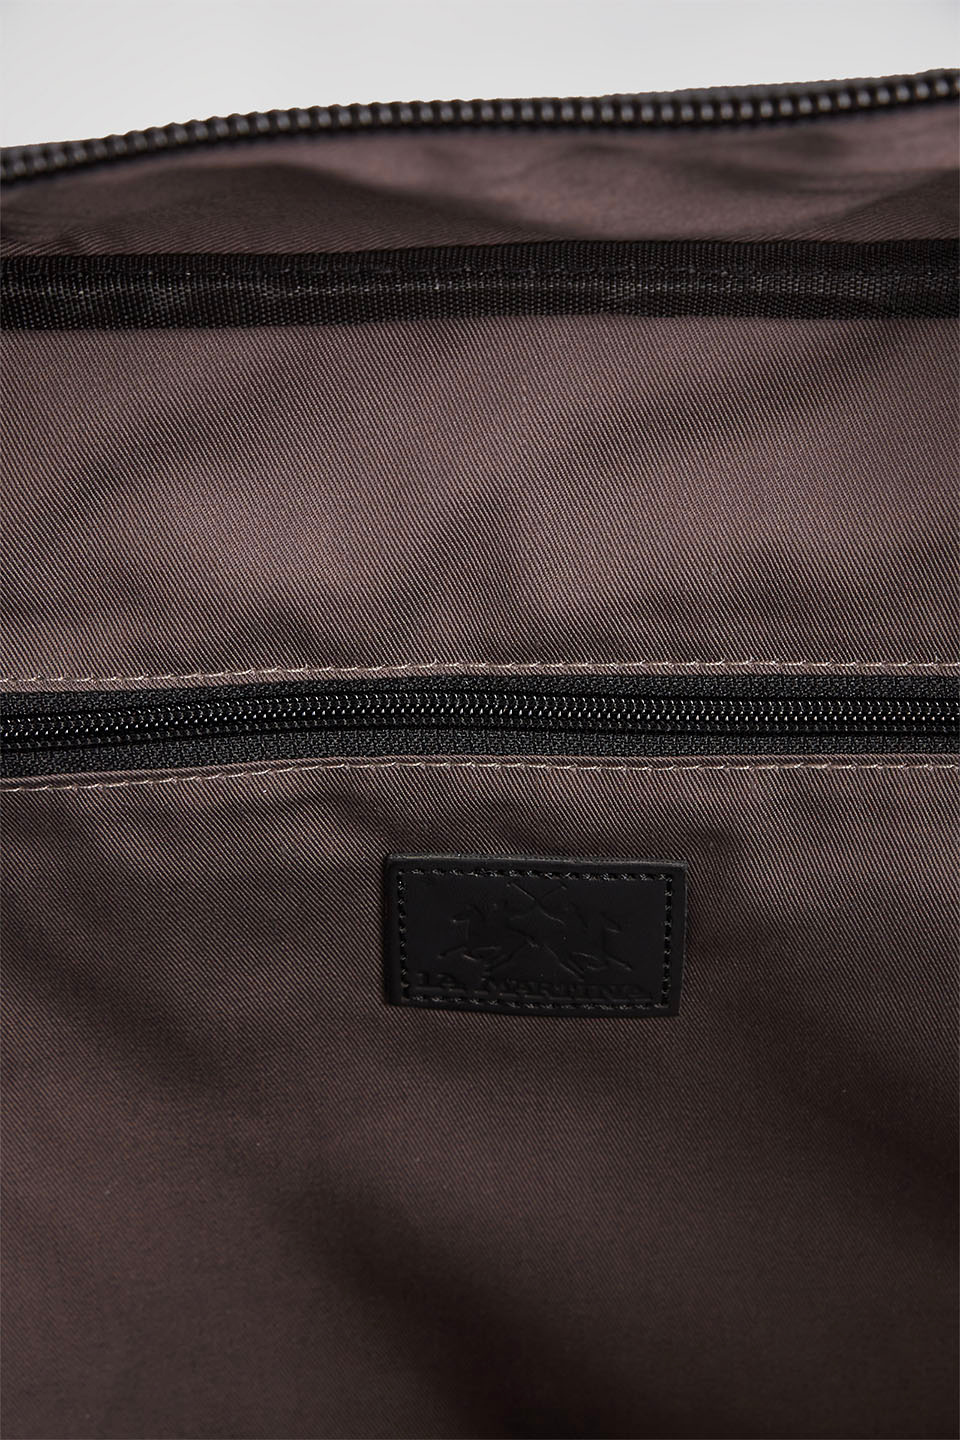 Nylon duffel bag | La Martina - Official Online Shop